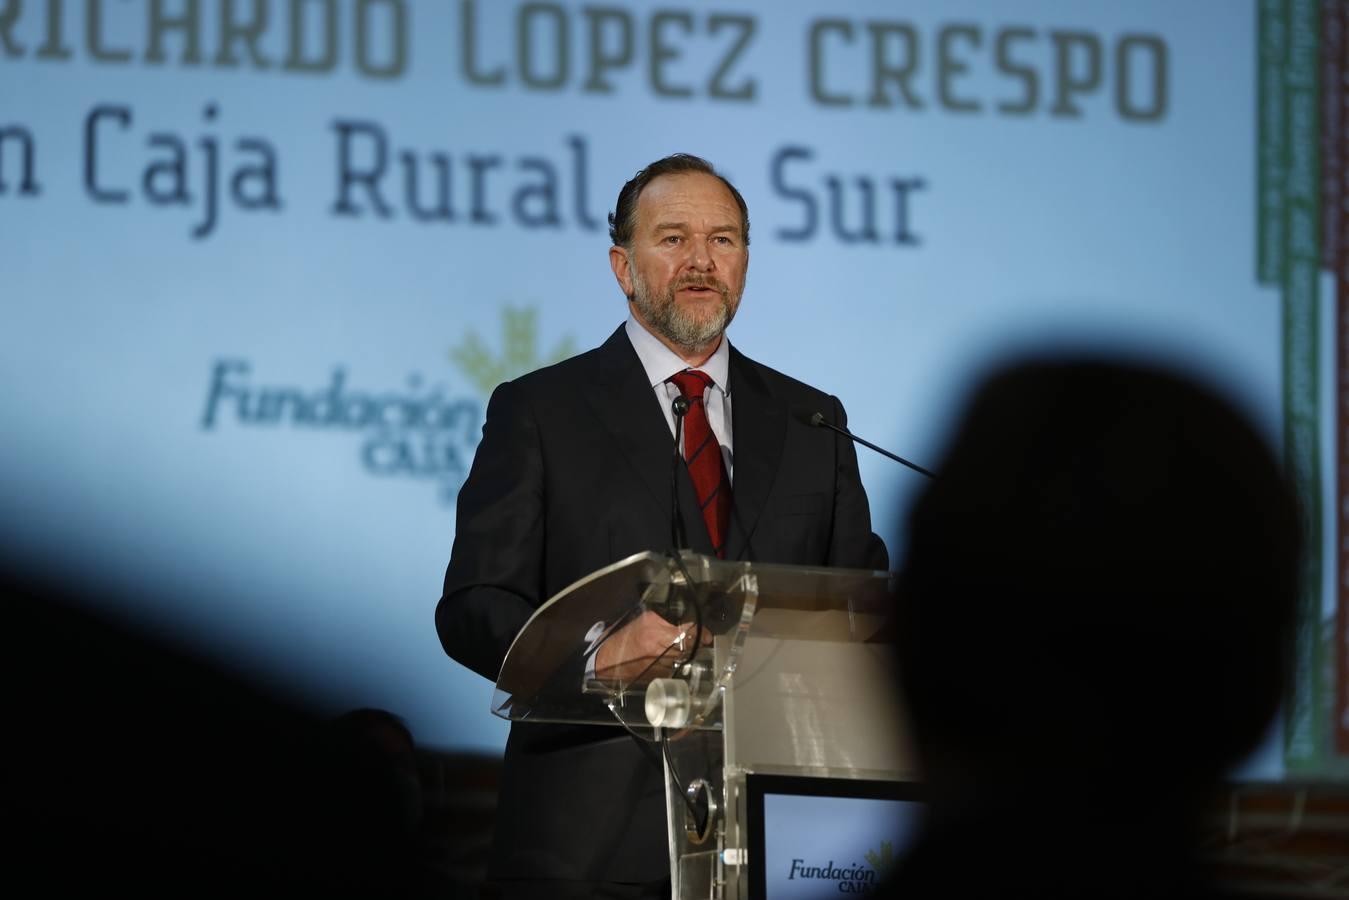 Los premios de Caja Rural del Sur de Córdoba, en imágenes